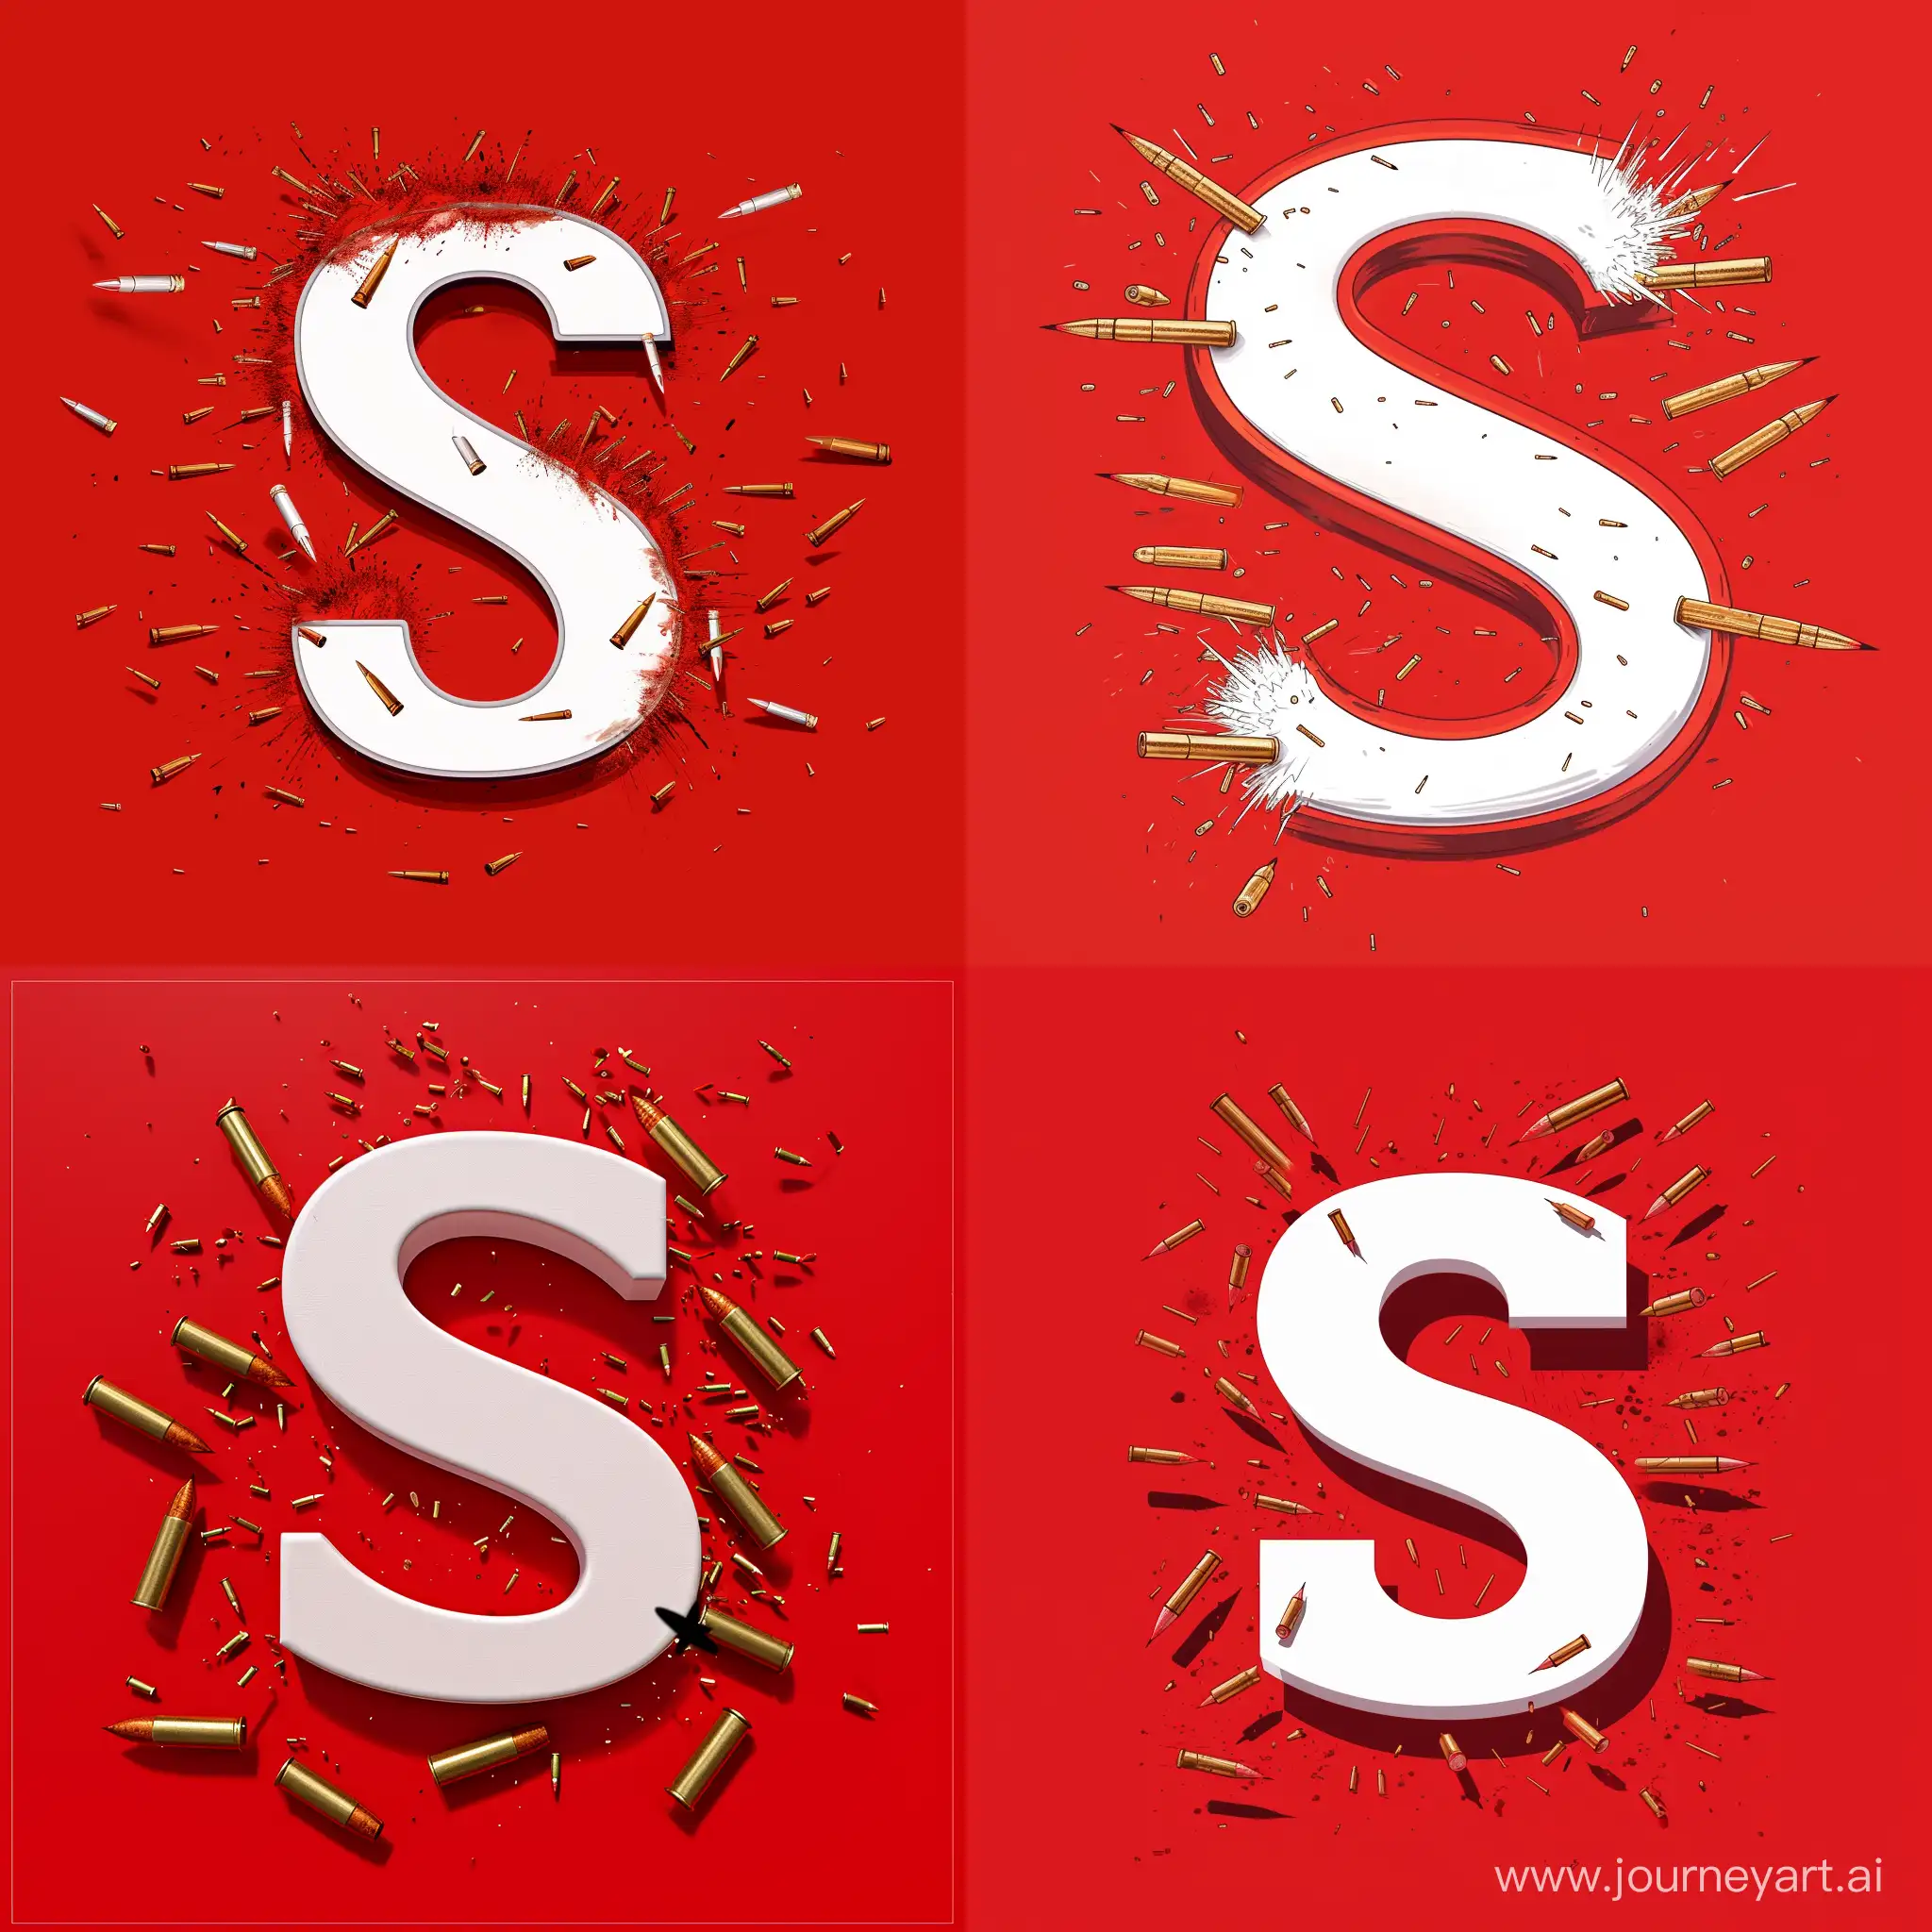 Красный фон буква S белая а вокруг война летящие пули врезающиеся в букву S 